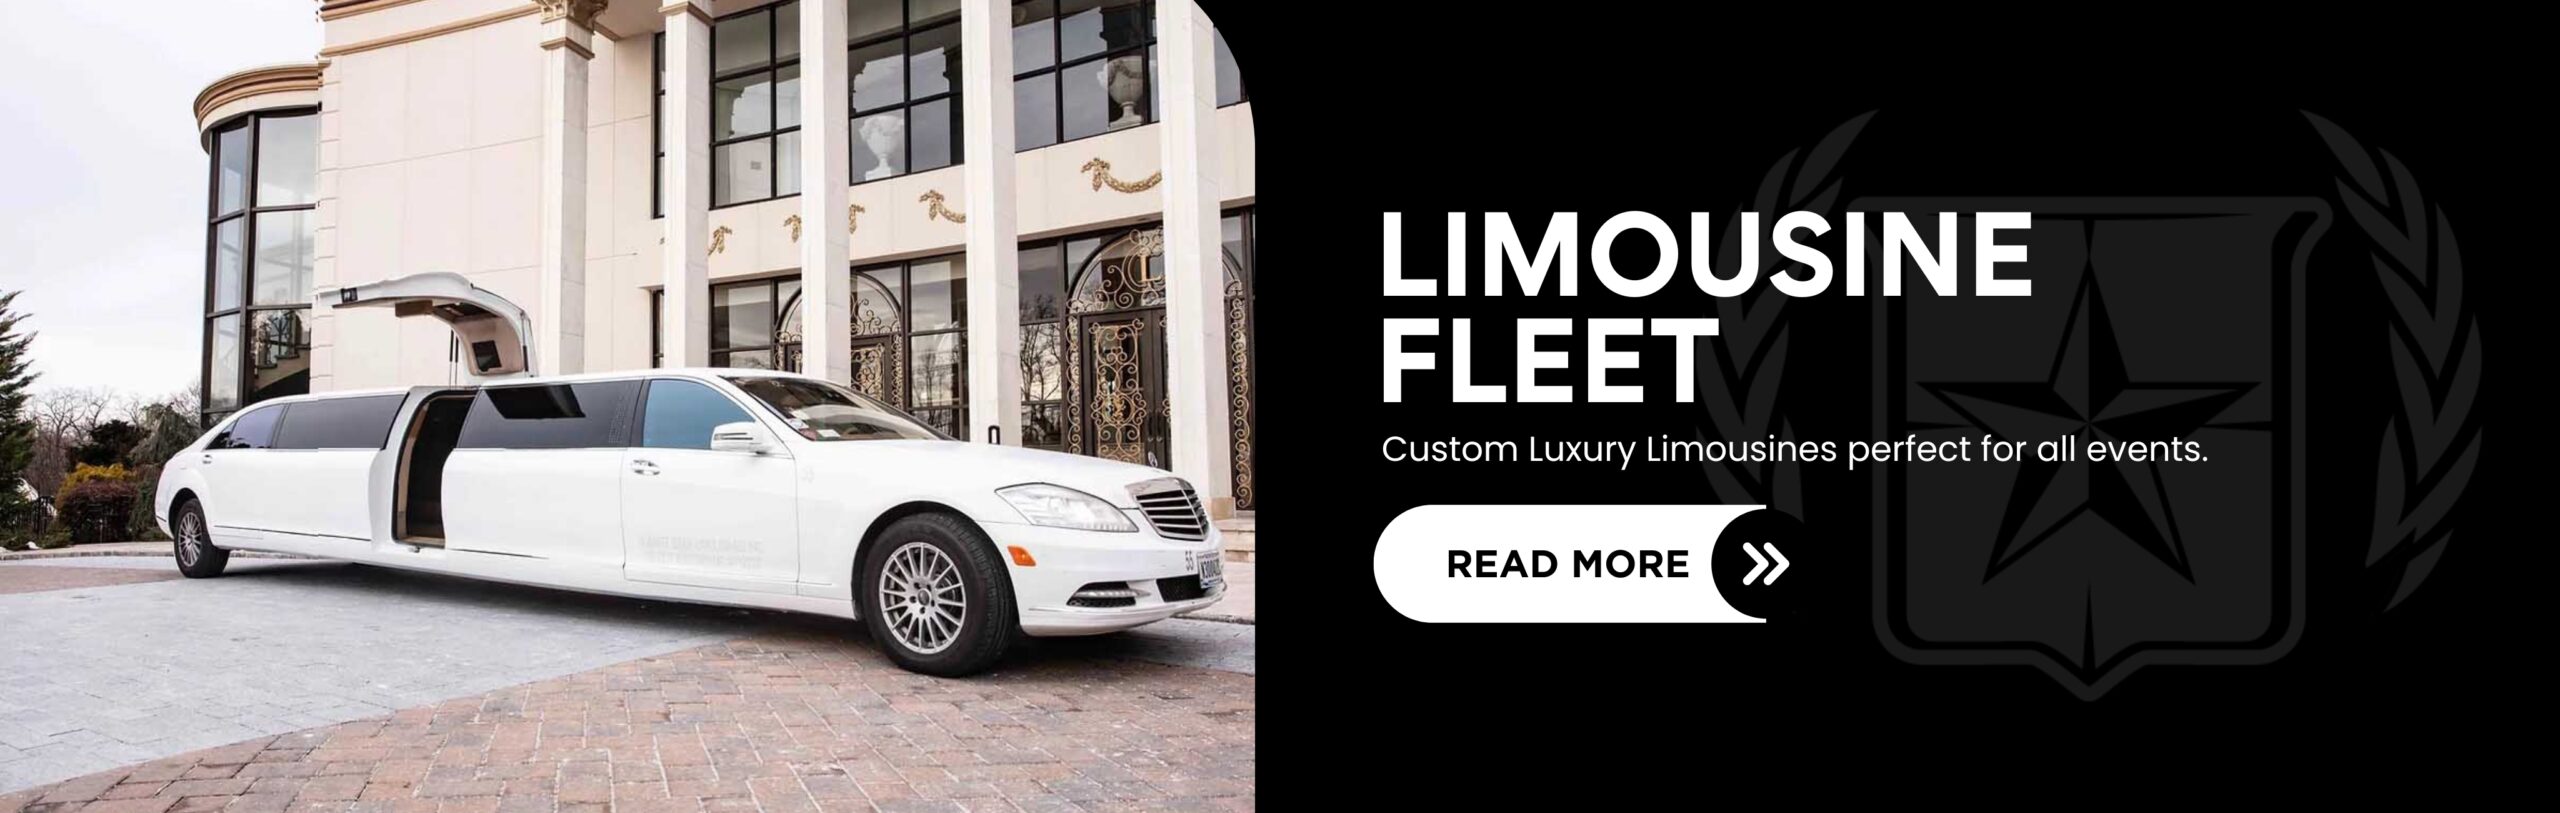 Limousine-Fleet